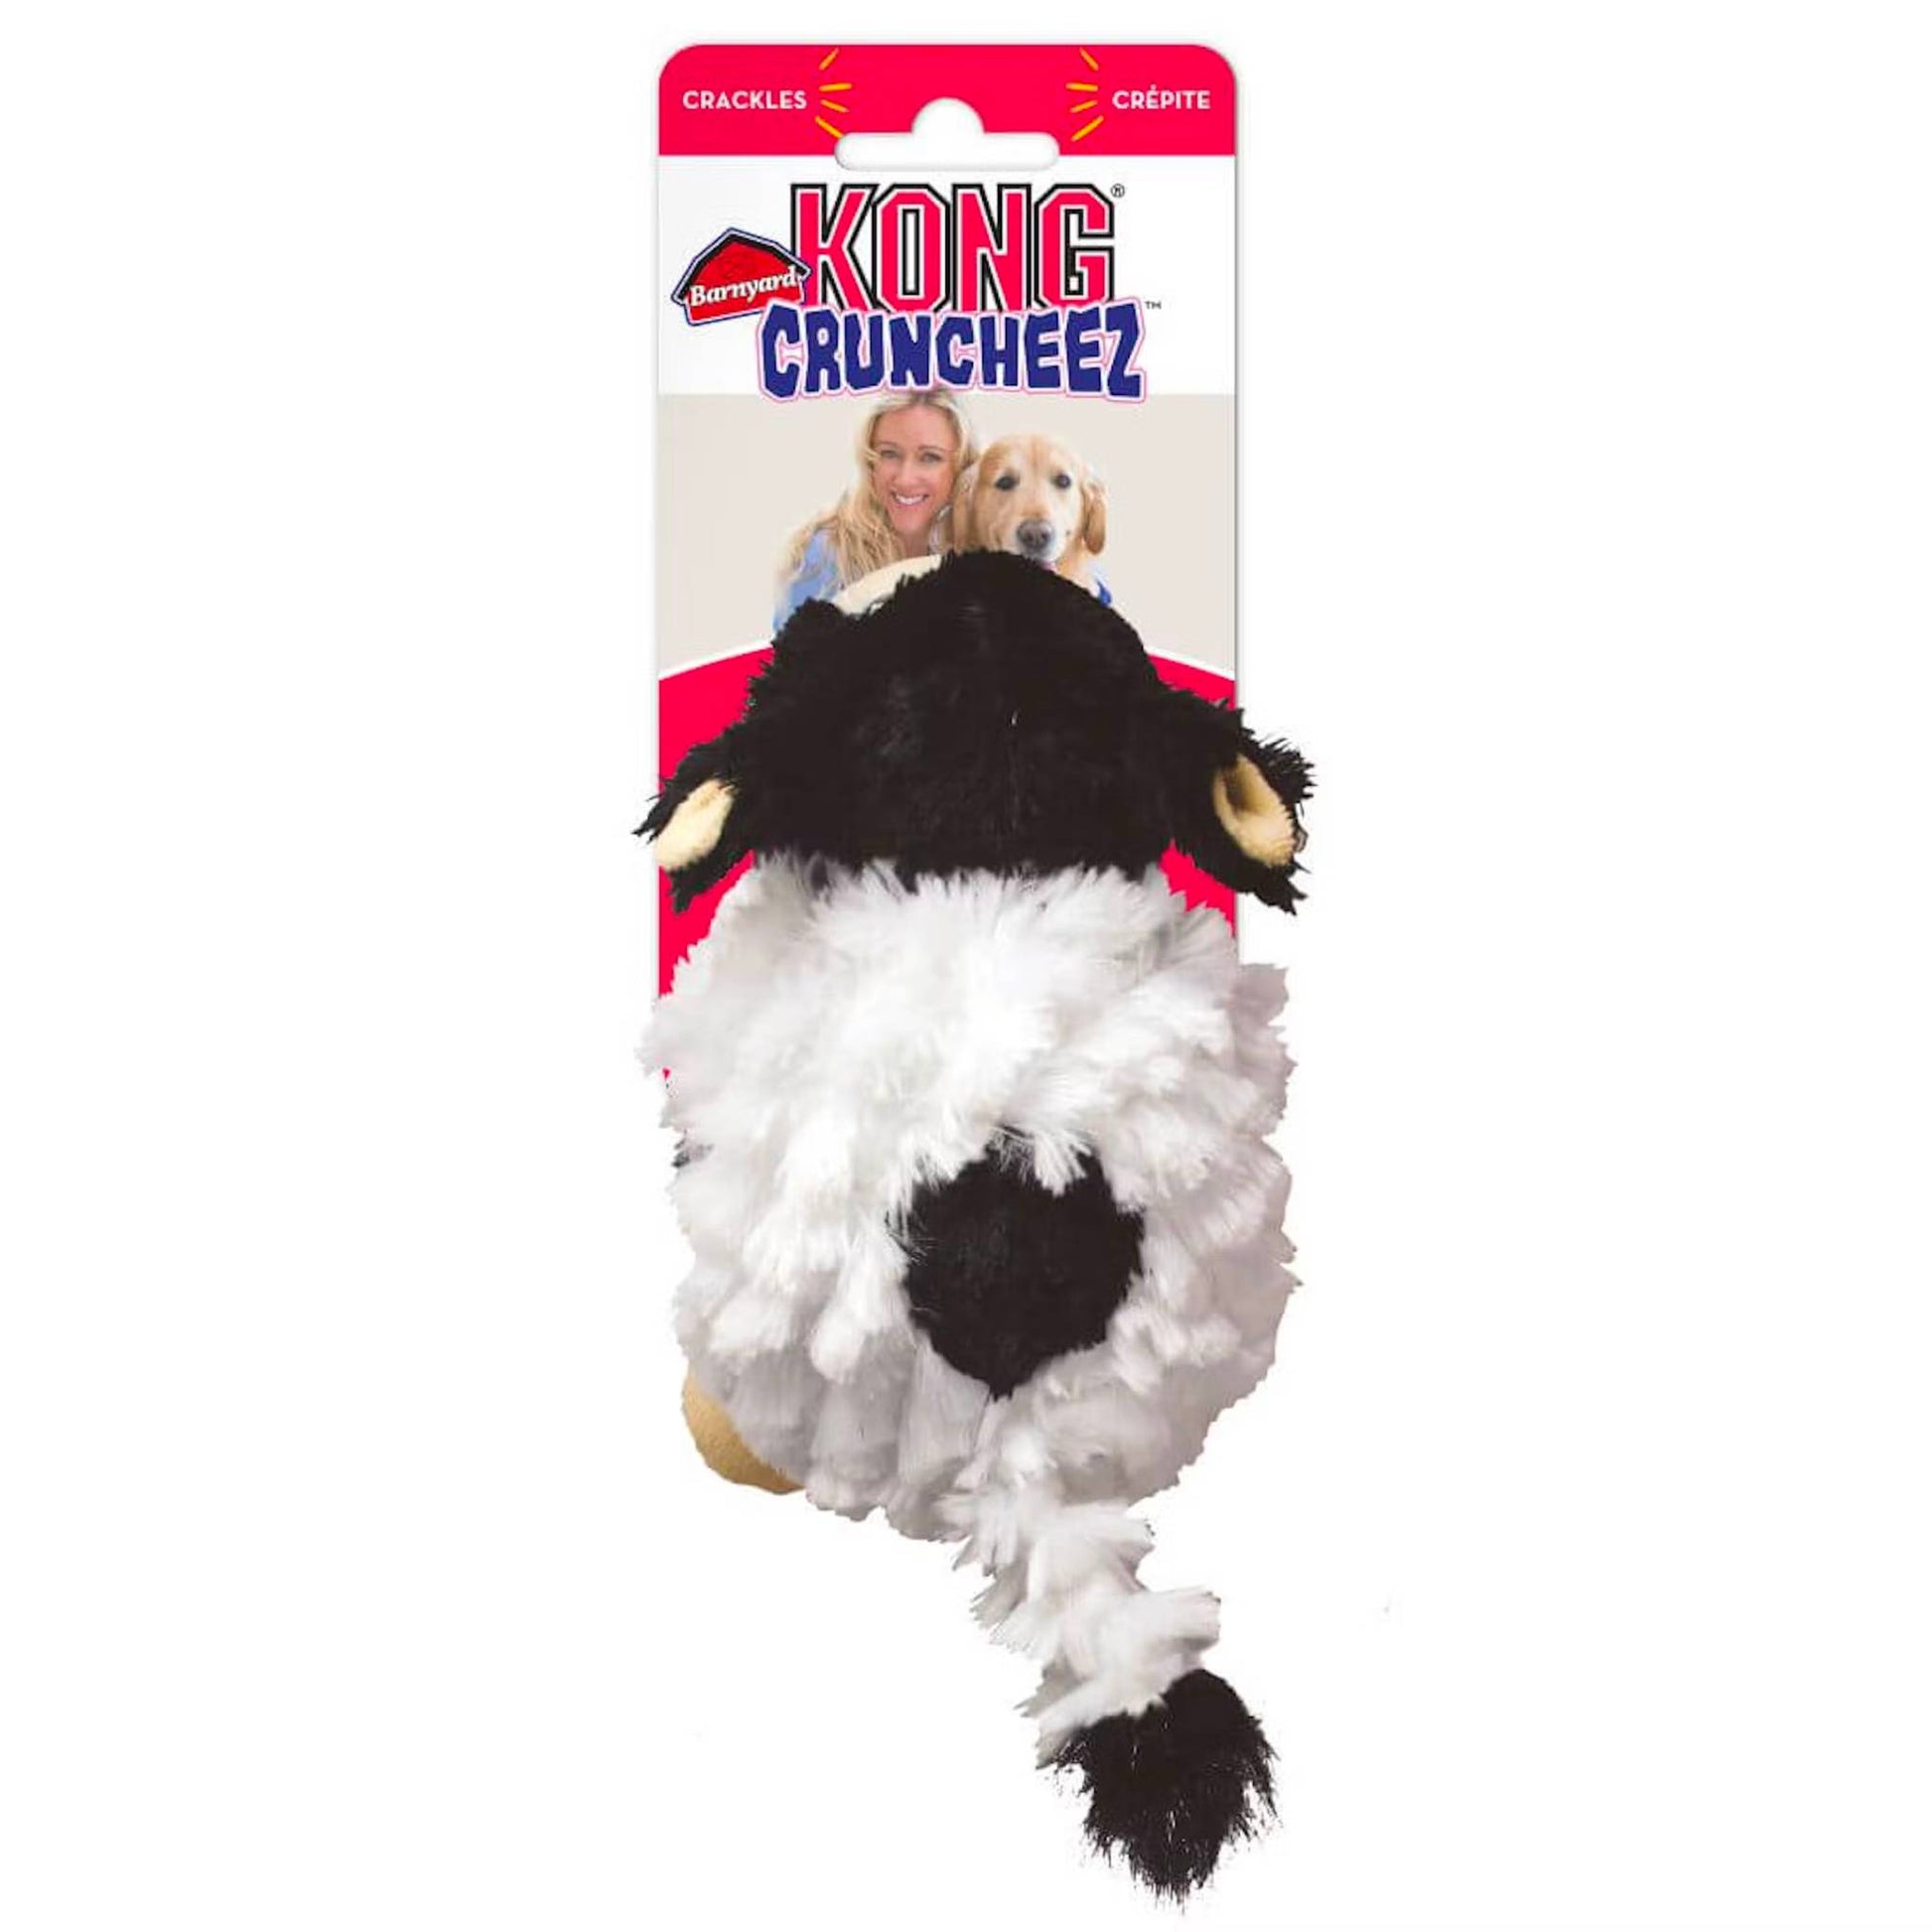 KONG Cruncheez Barnyard Cow